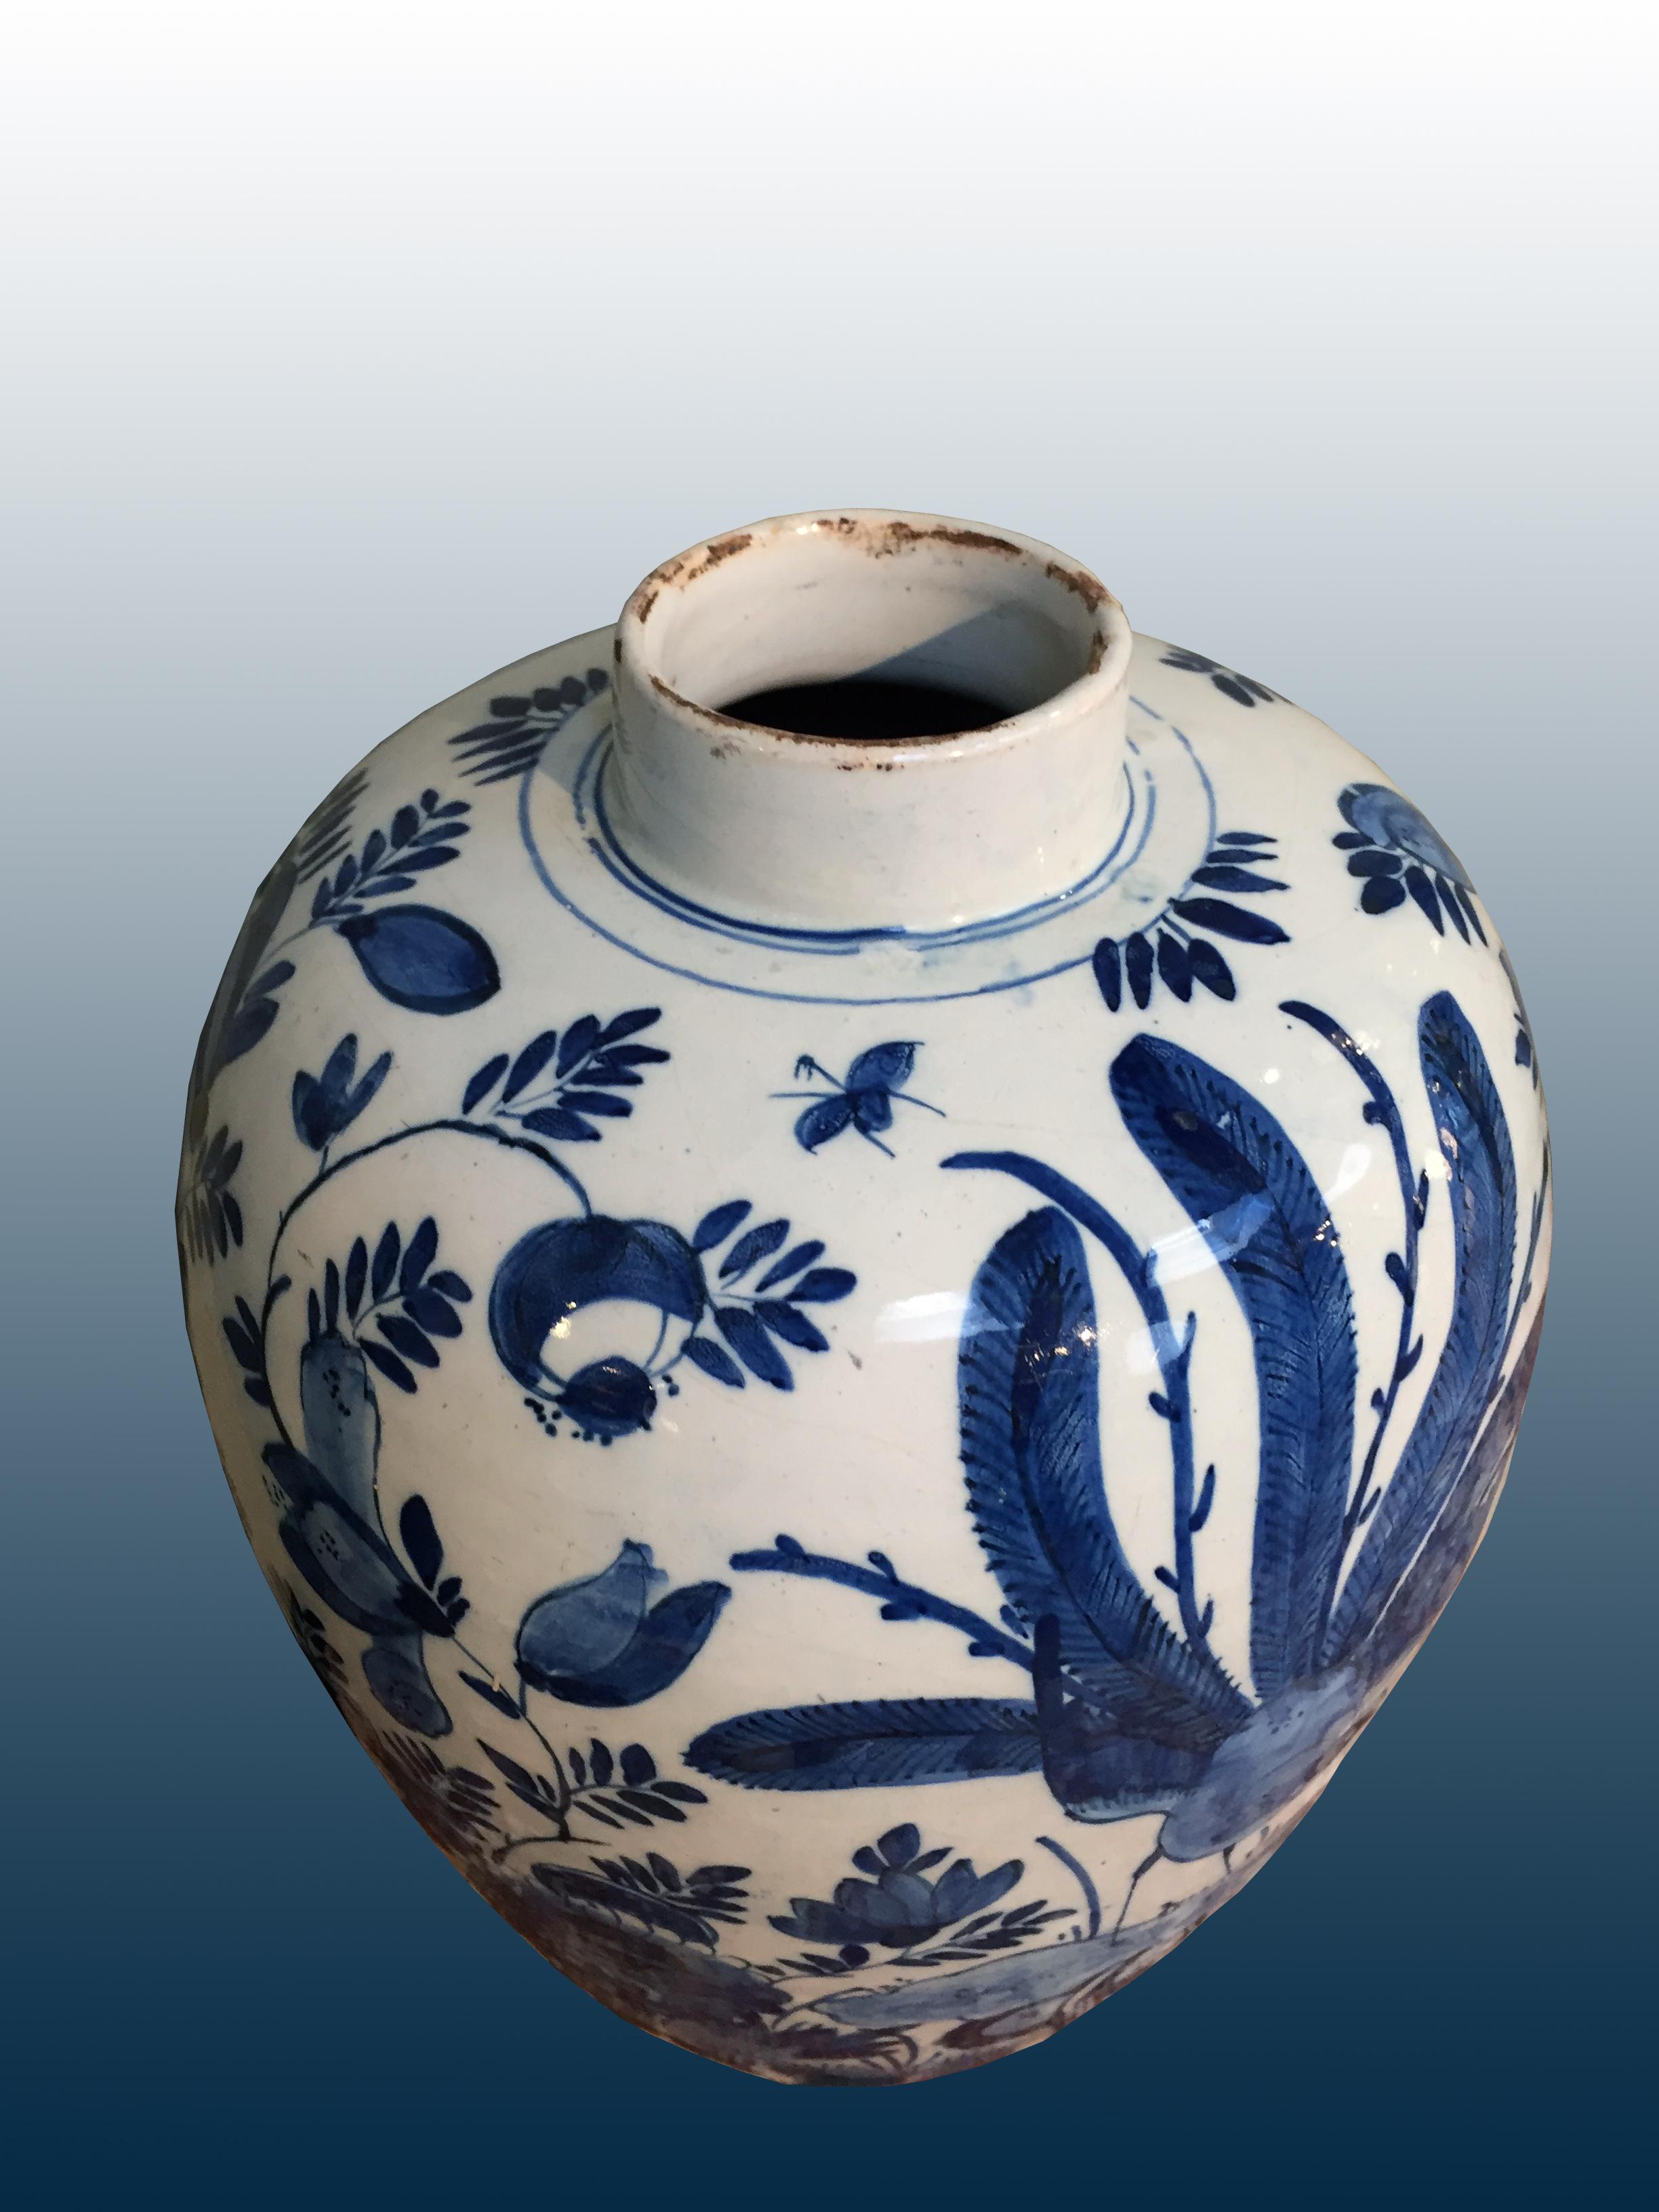 Ceramic 18th century Dutch Delft Vase with Peacock